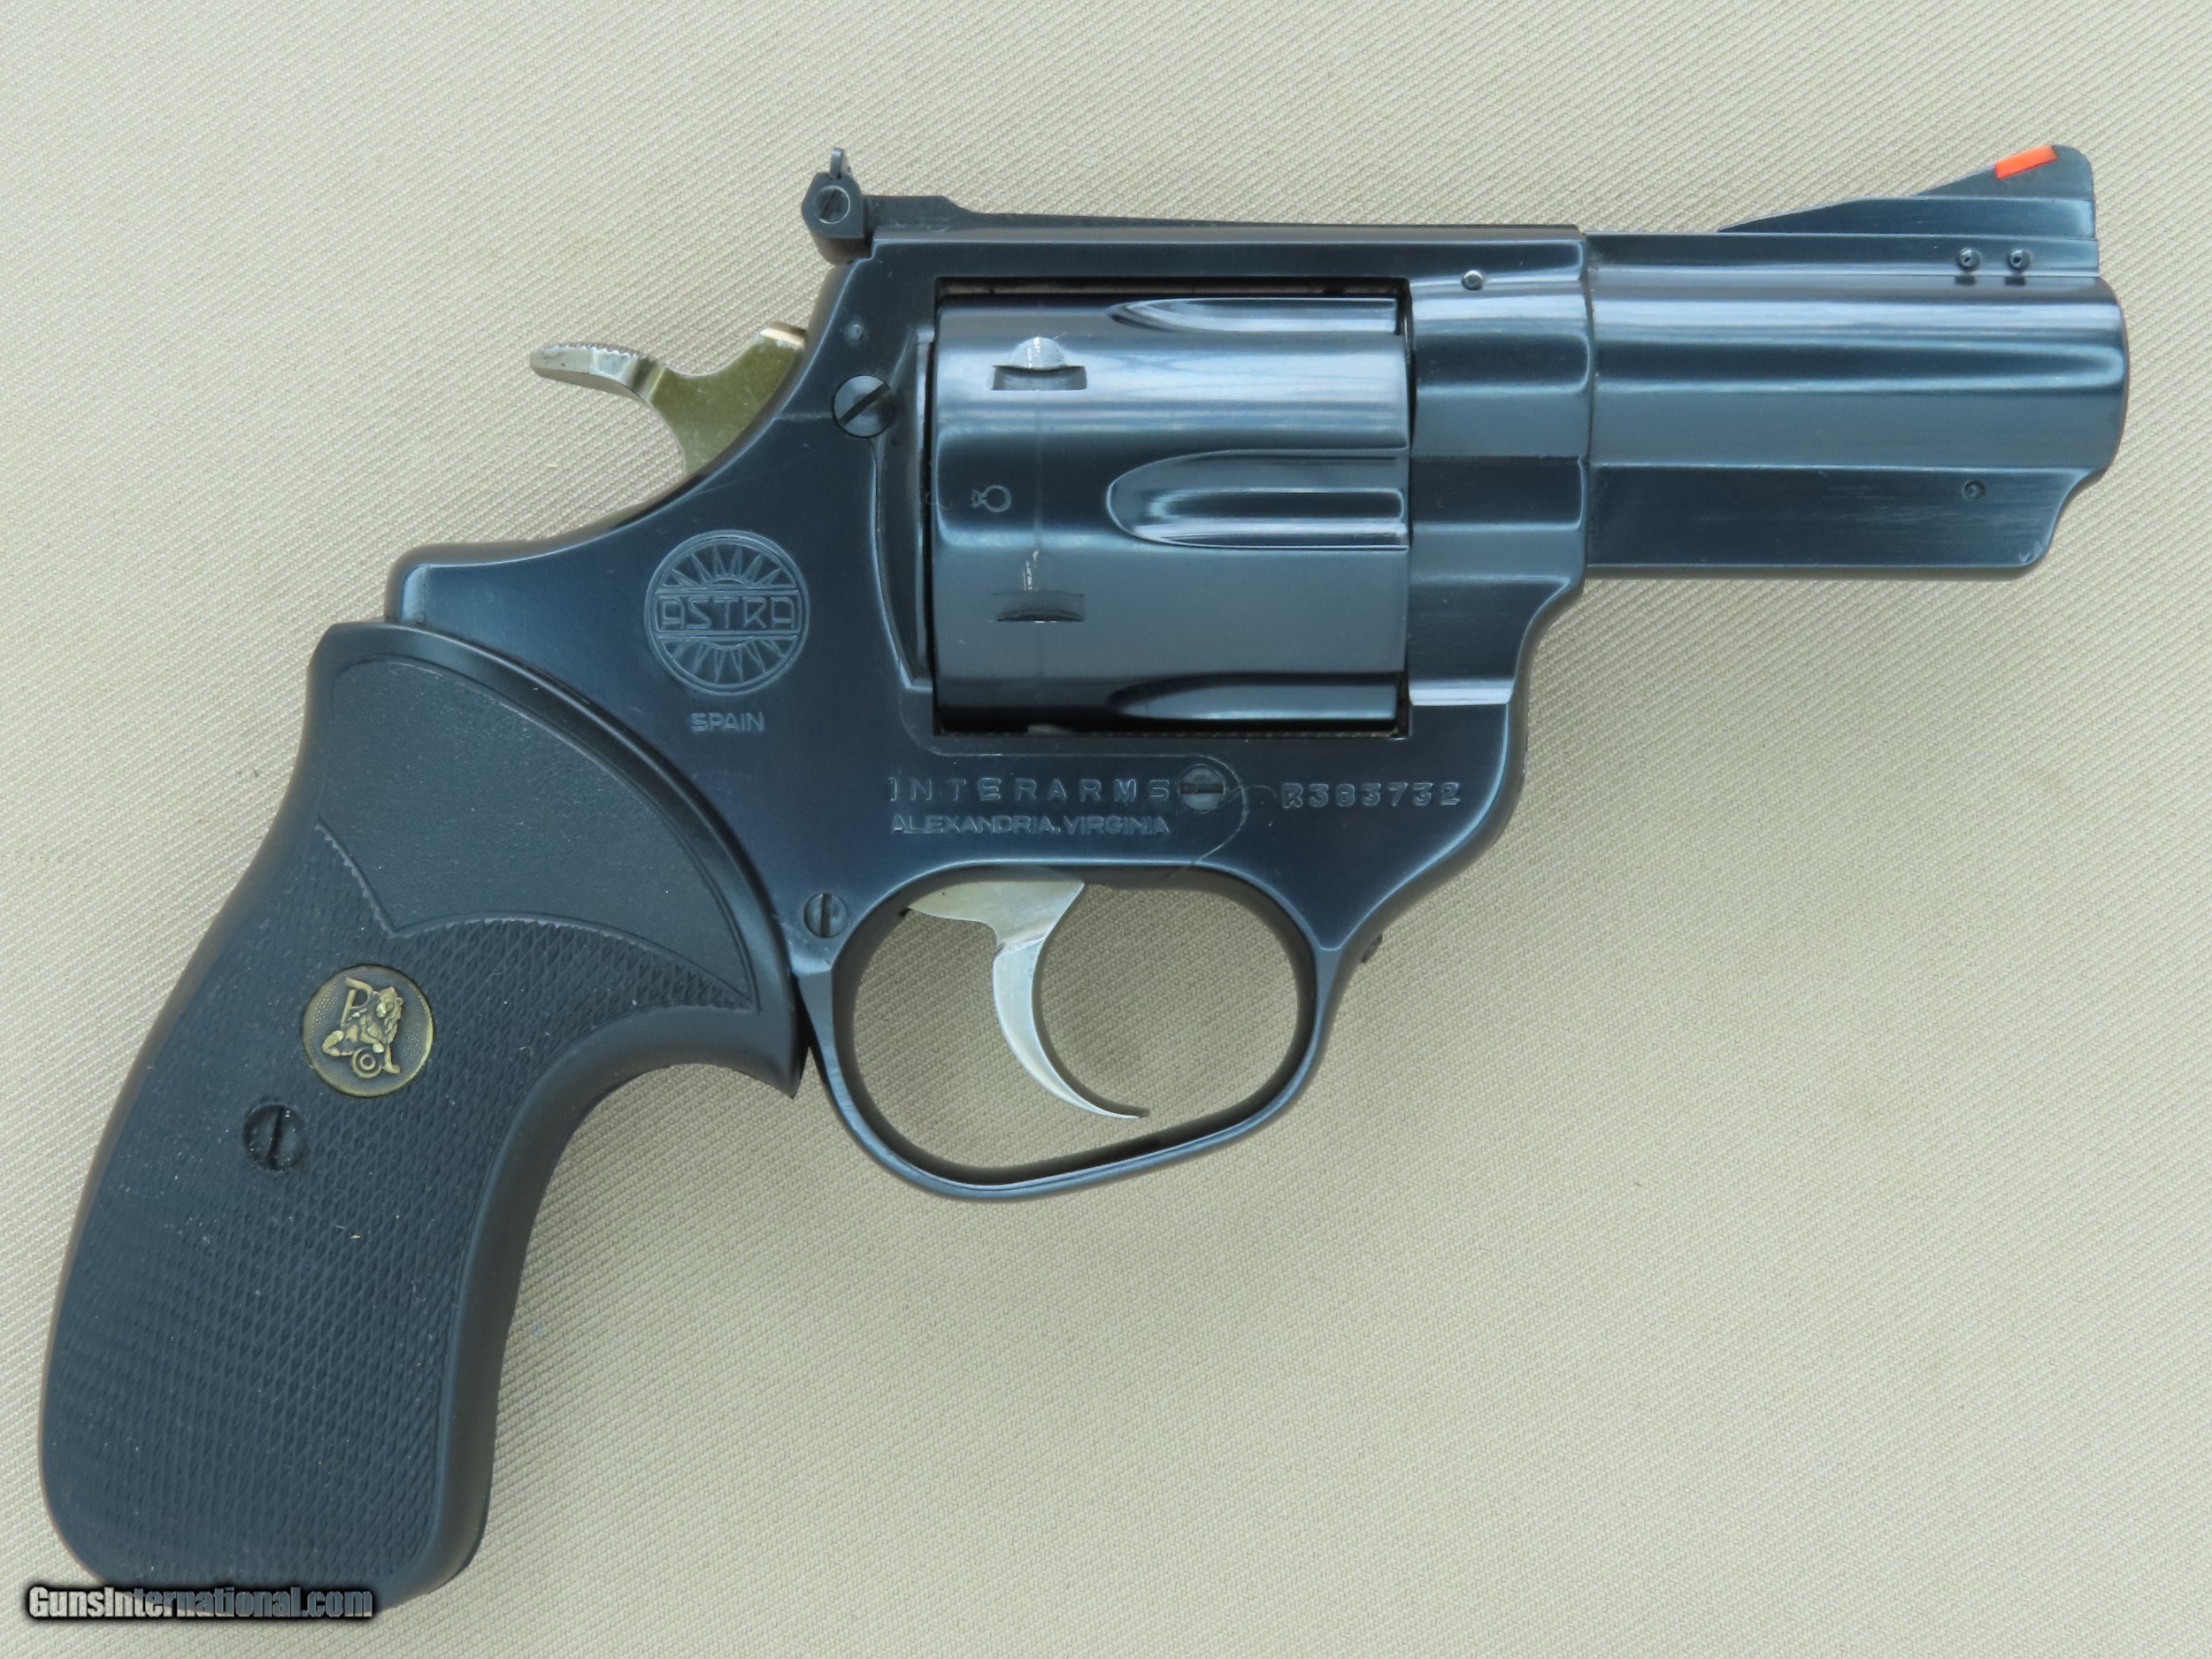 1980and-39-s-Vintage-Astra-TERMINATOR-44-Magnum-Revolver-w-Original-Box-Manual-Sight-Tool-RARE-Mint_101498047_70986_97A8EAE955A01C8E.JPG